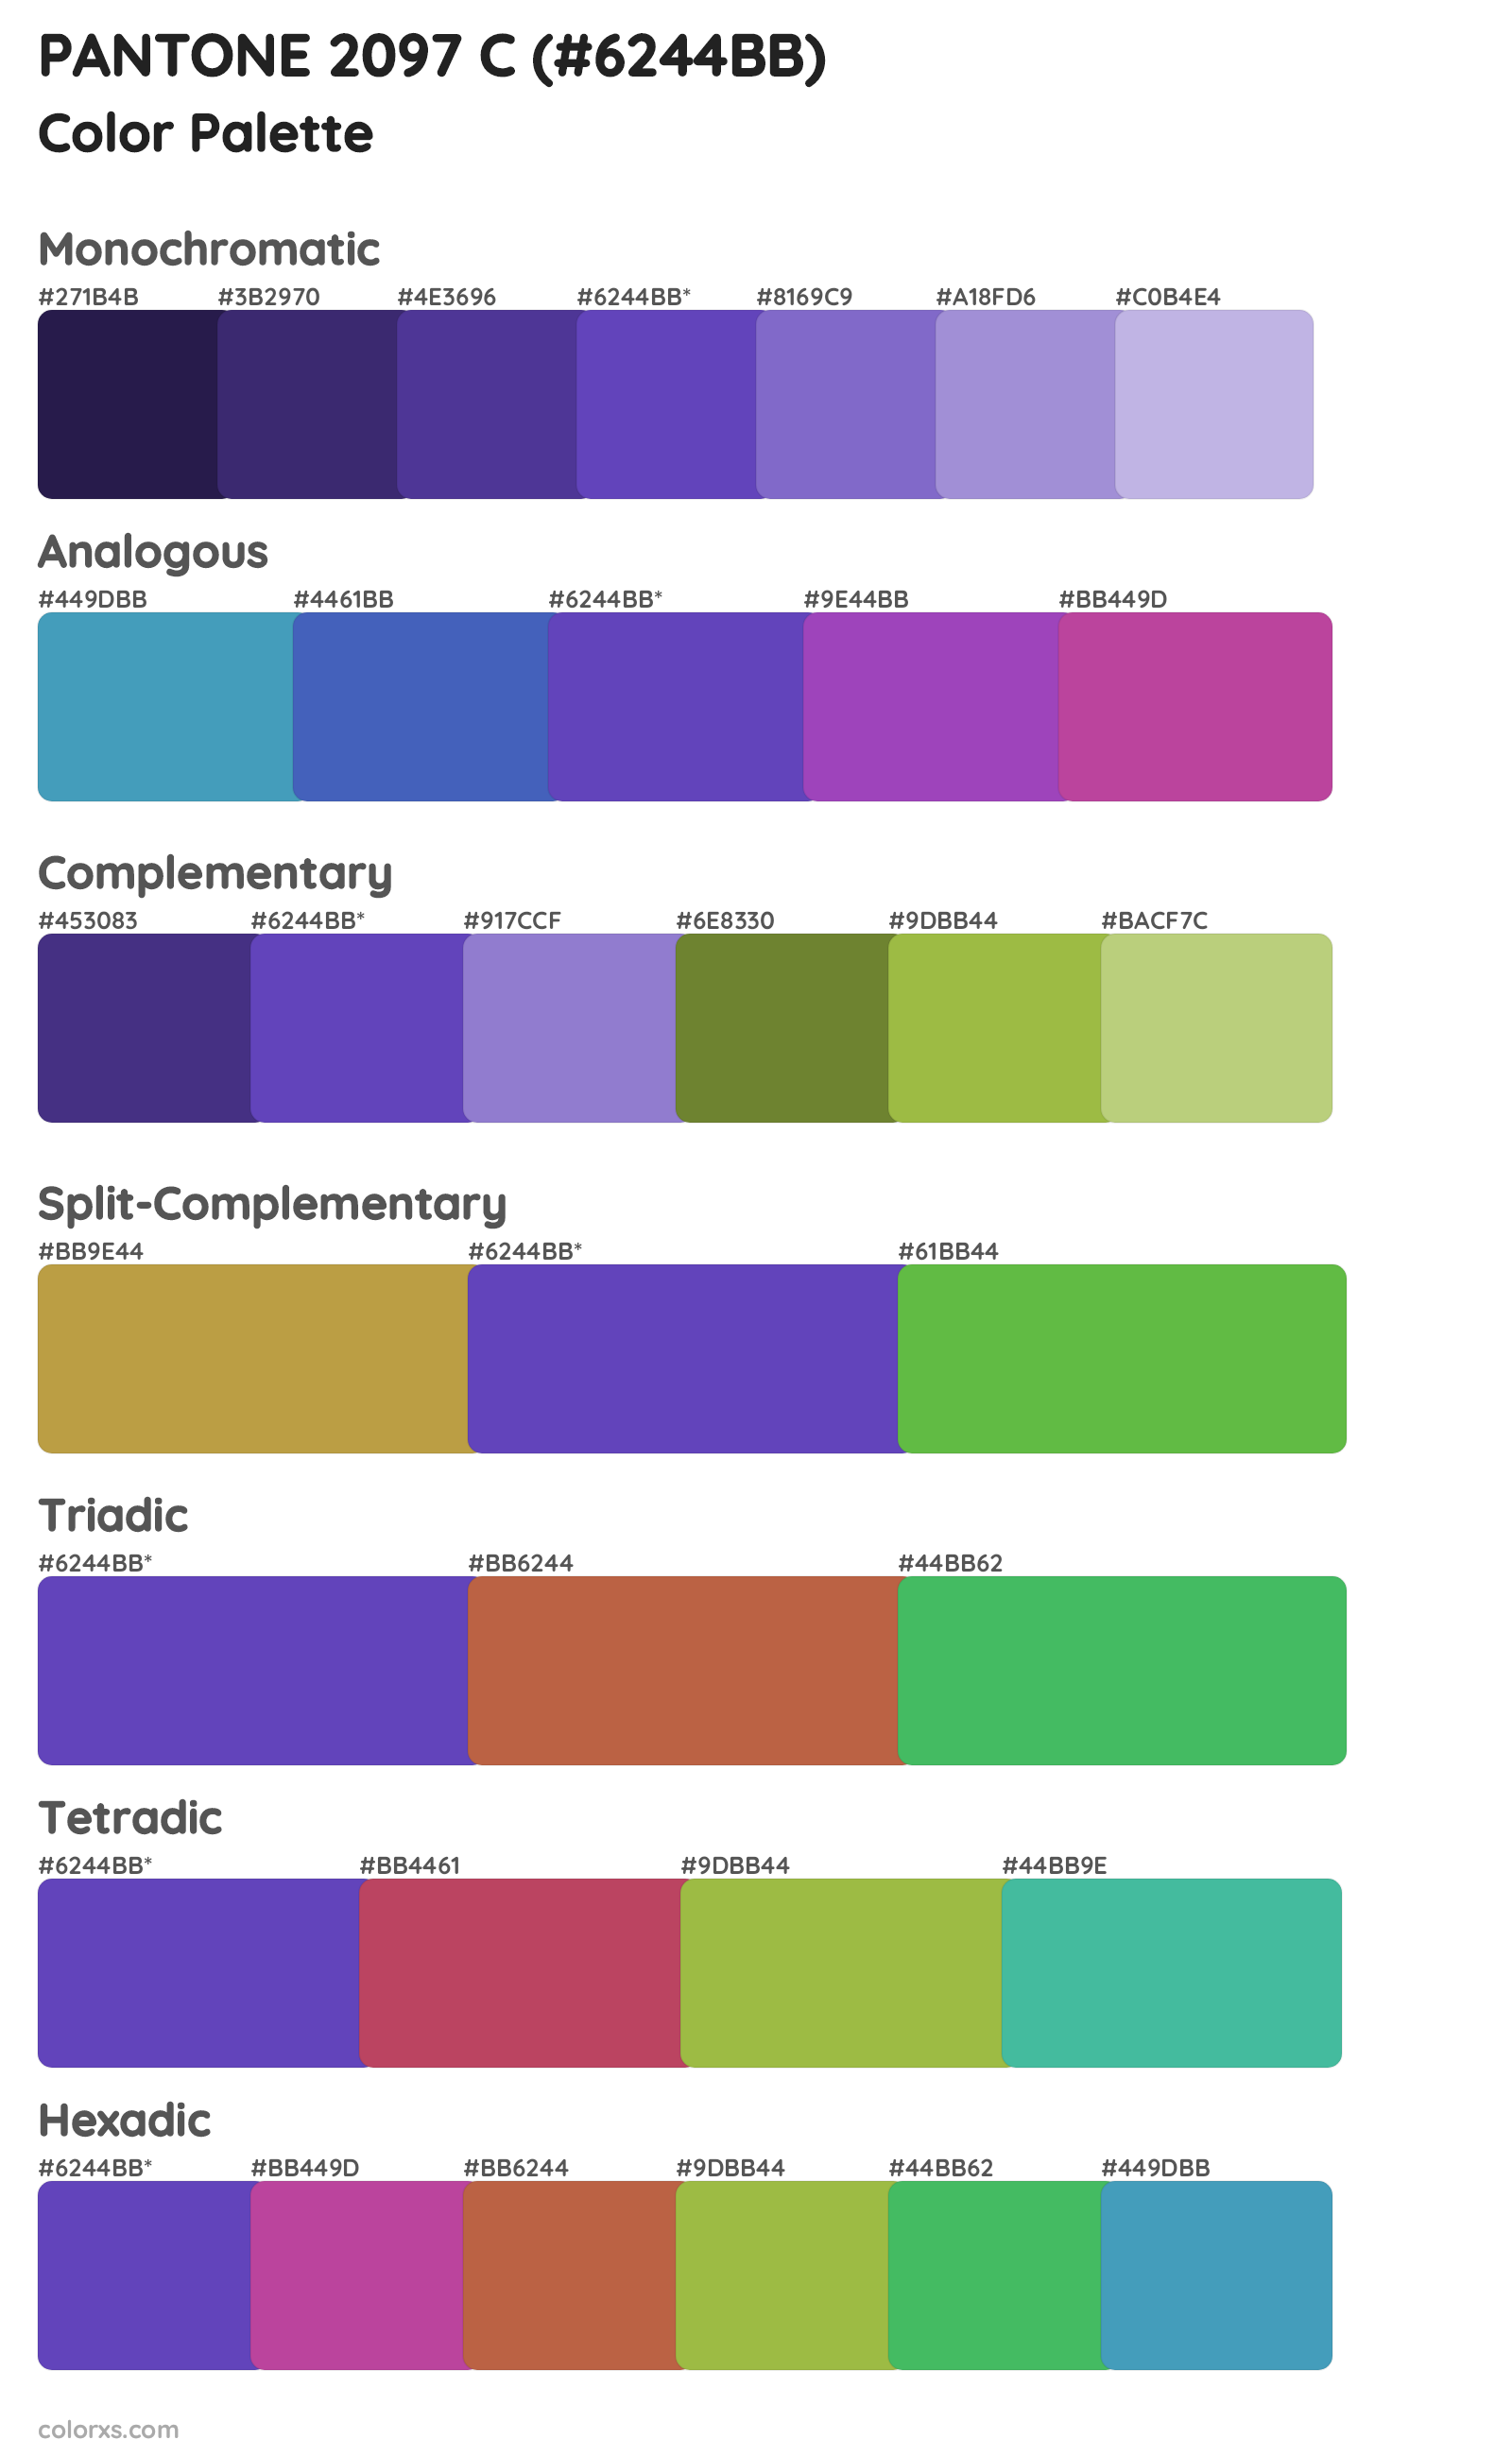 PANTONE 2097 C Color Scheme Palettes